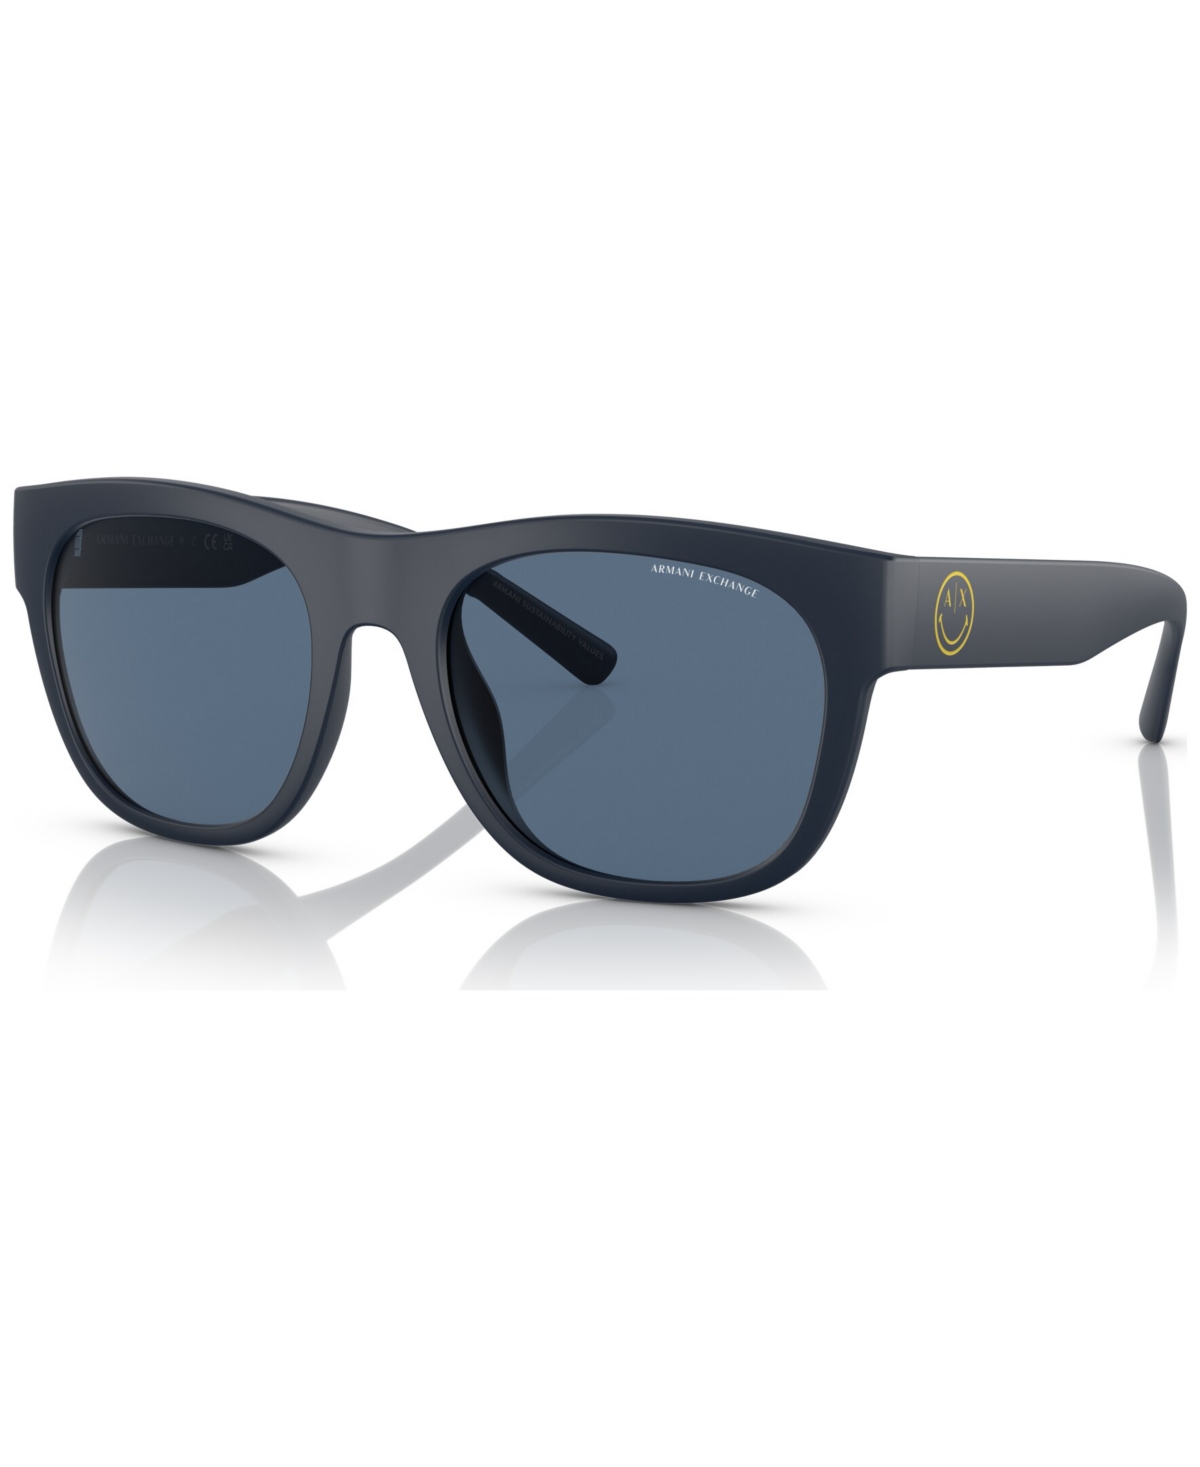 Ax Armani Exchange Men's Sunglasses, Ax4128su In Matte Blue